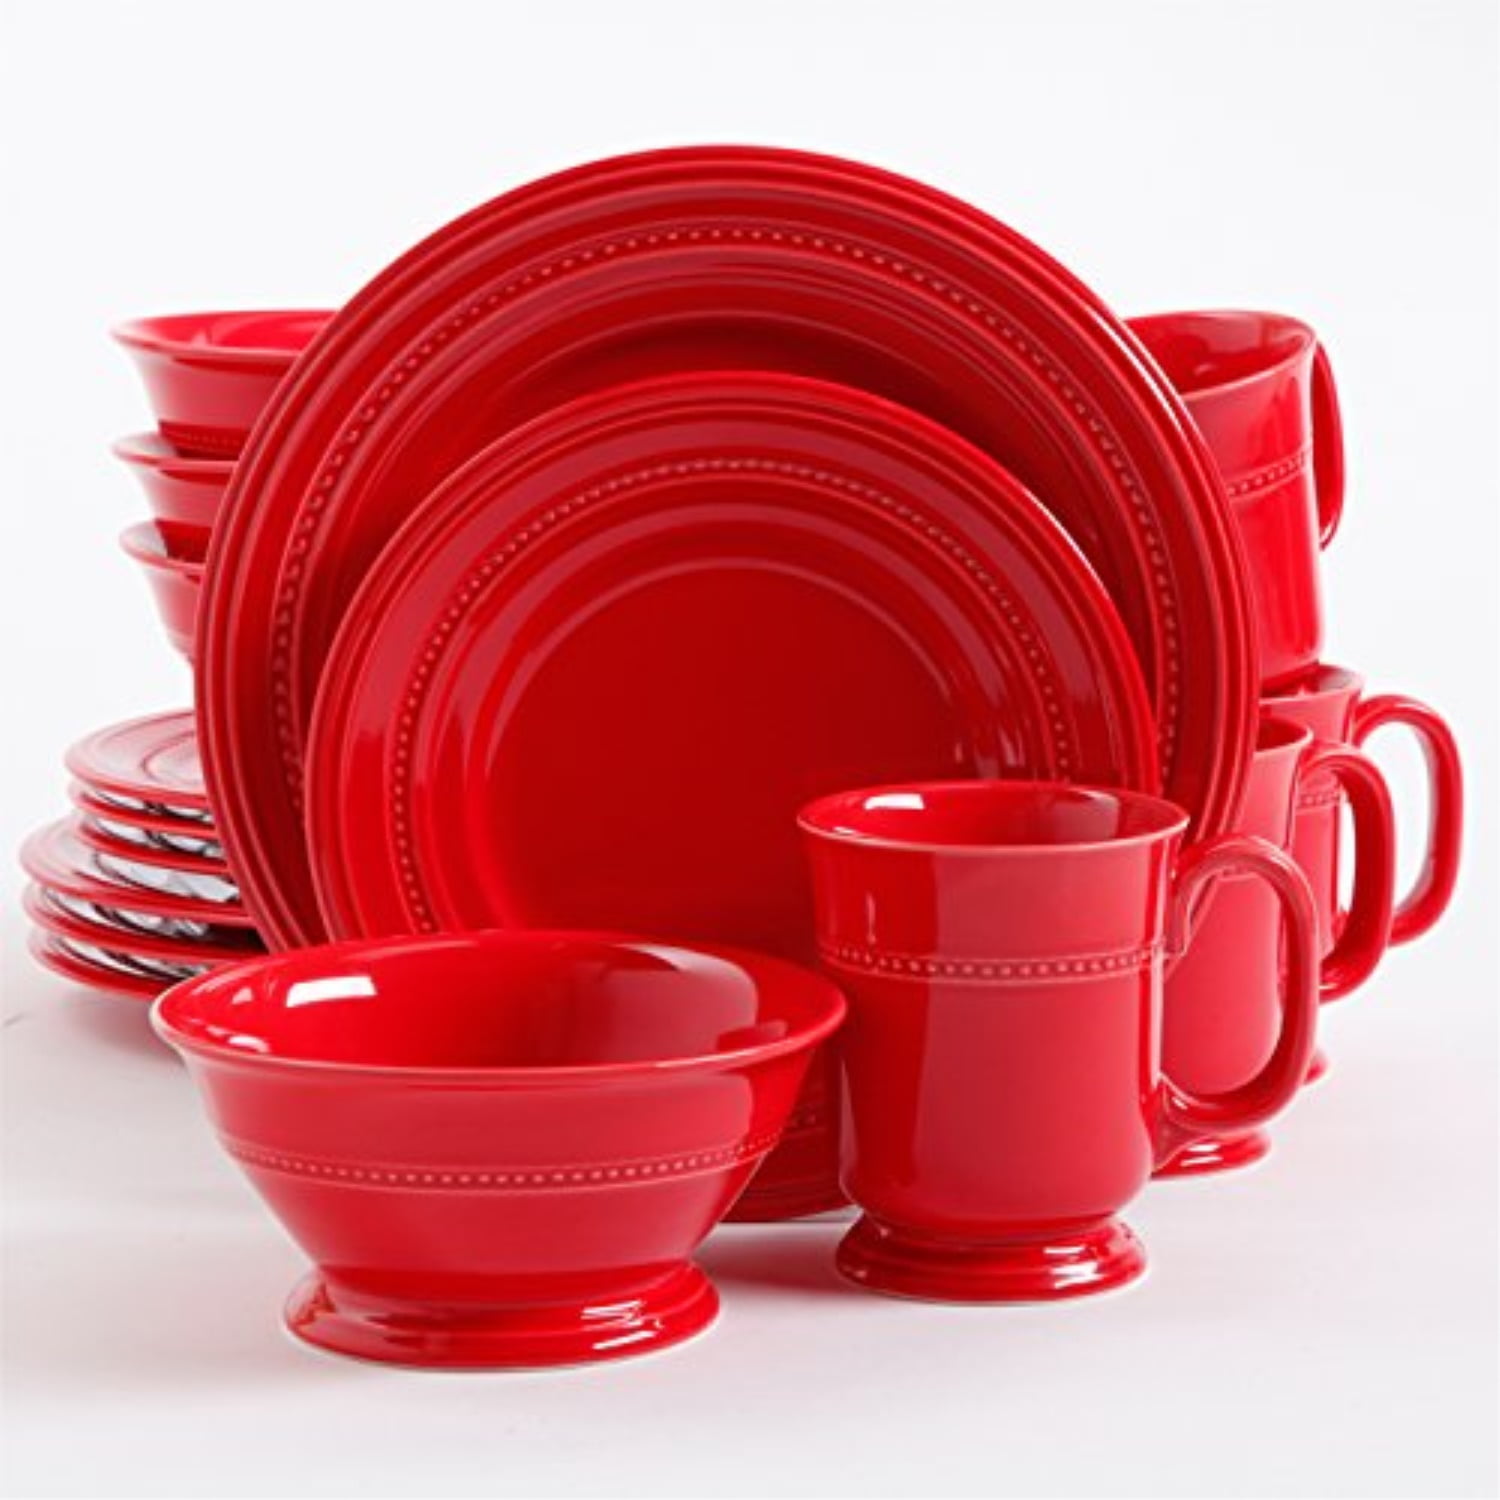 Купить красную посуду. Посуда красного цвета. Набор посуды столовой. Столовый сервиз красный. Набор посуды красный.